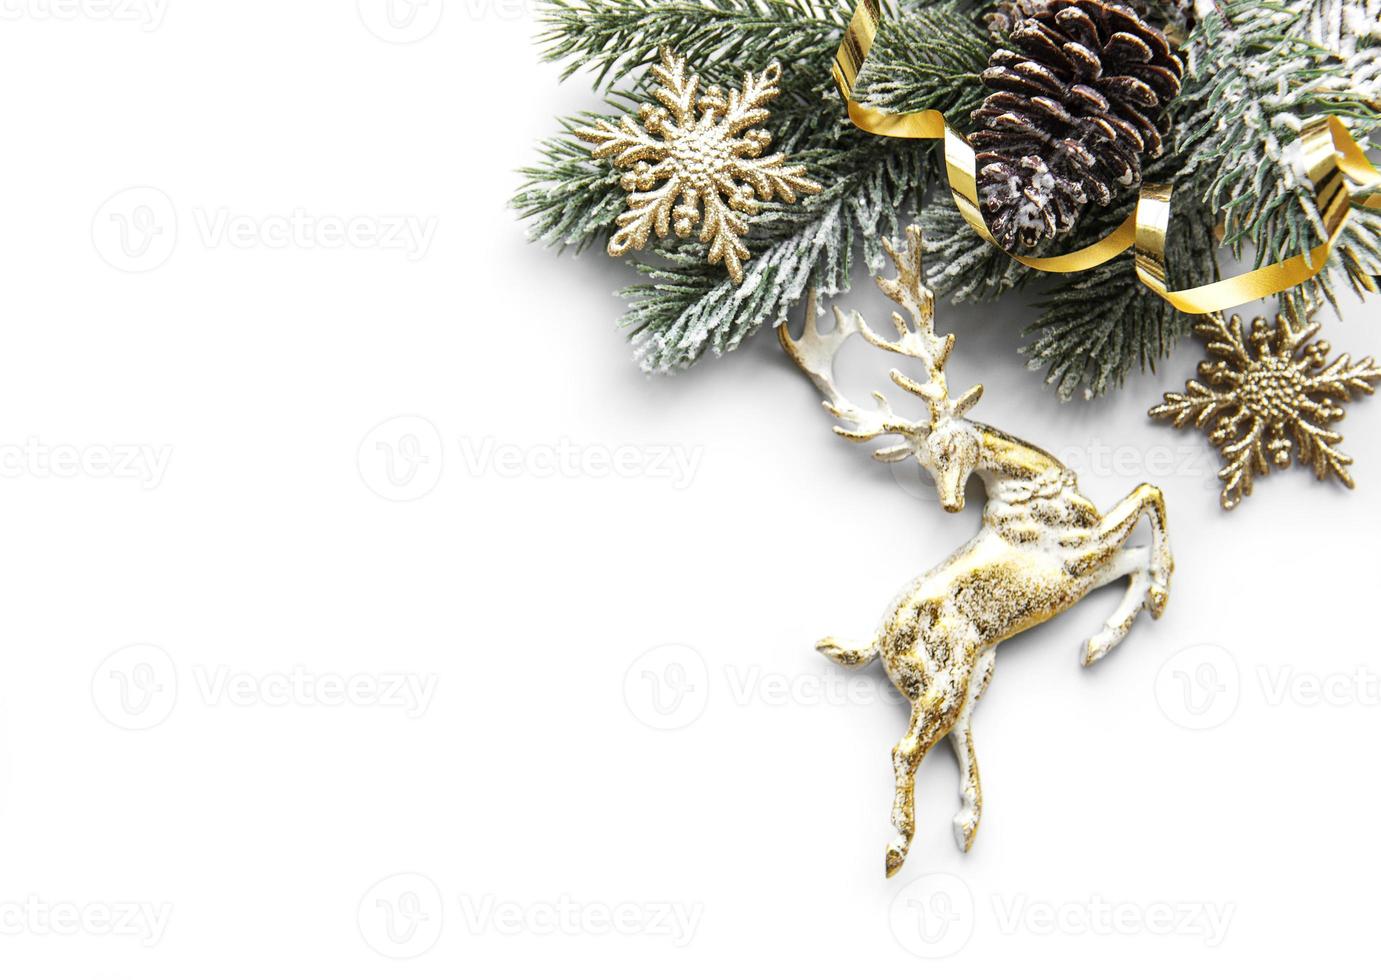 composição de Natal com veados, flocos de neve e ramos de abeto. foto